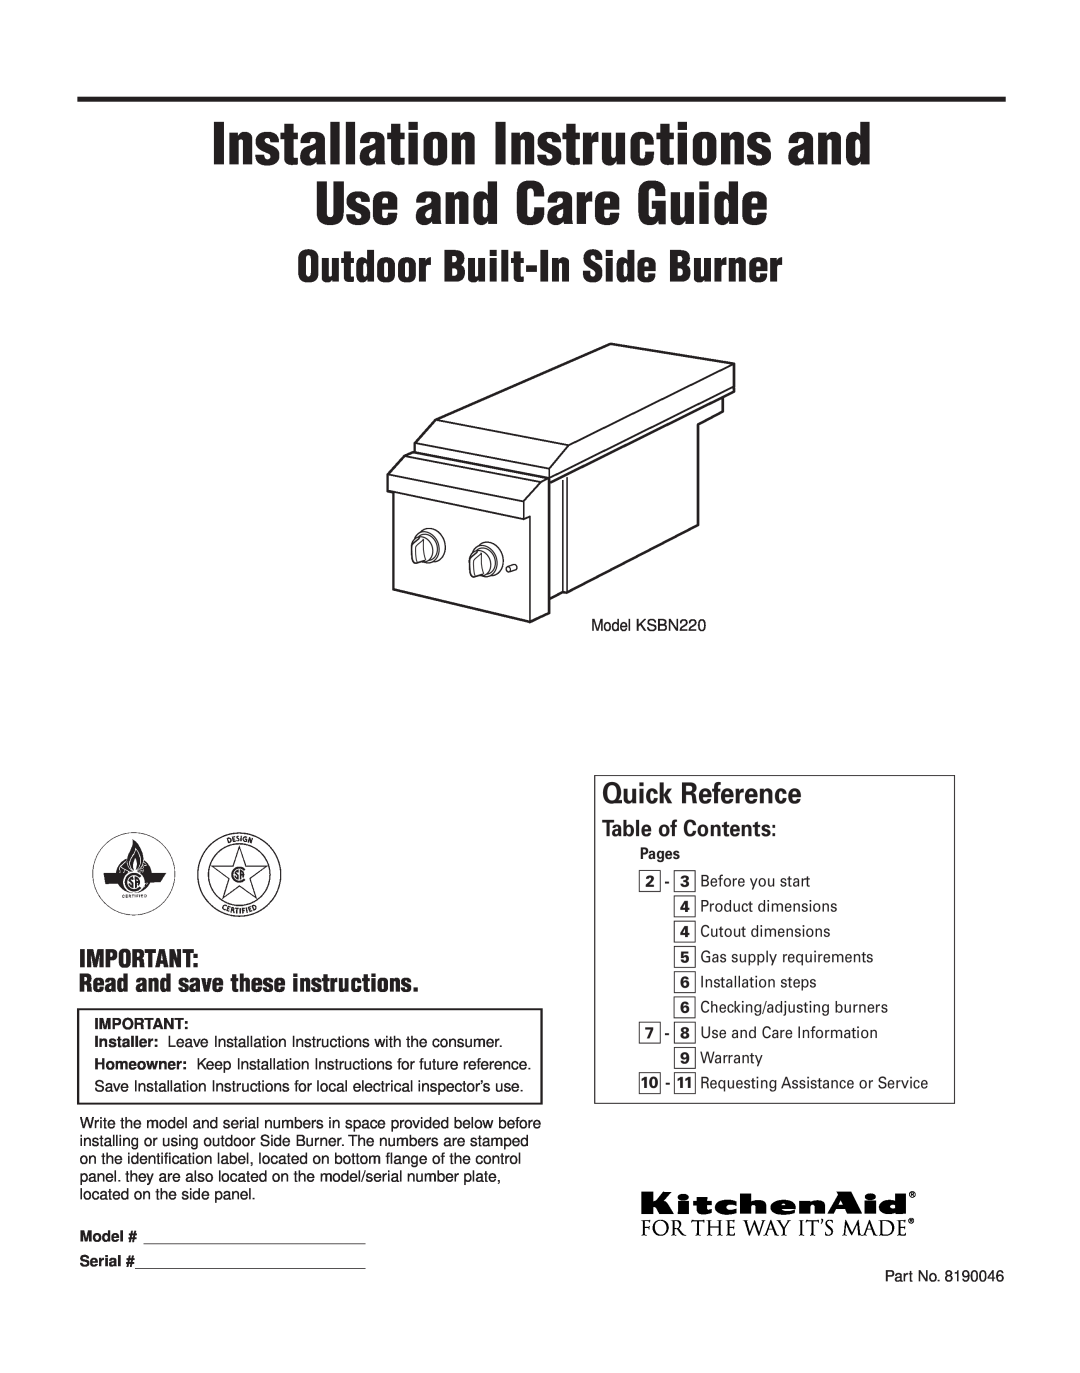 KitchenAid KSBN220 installation instructions Installation Instructions and Use and Care Guide, Outdoor Built-InSide Burner 